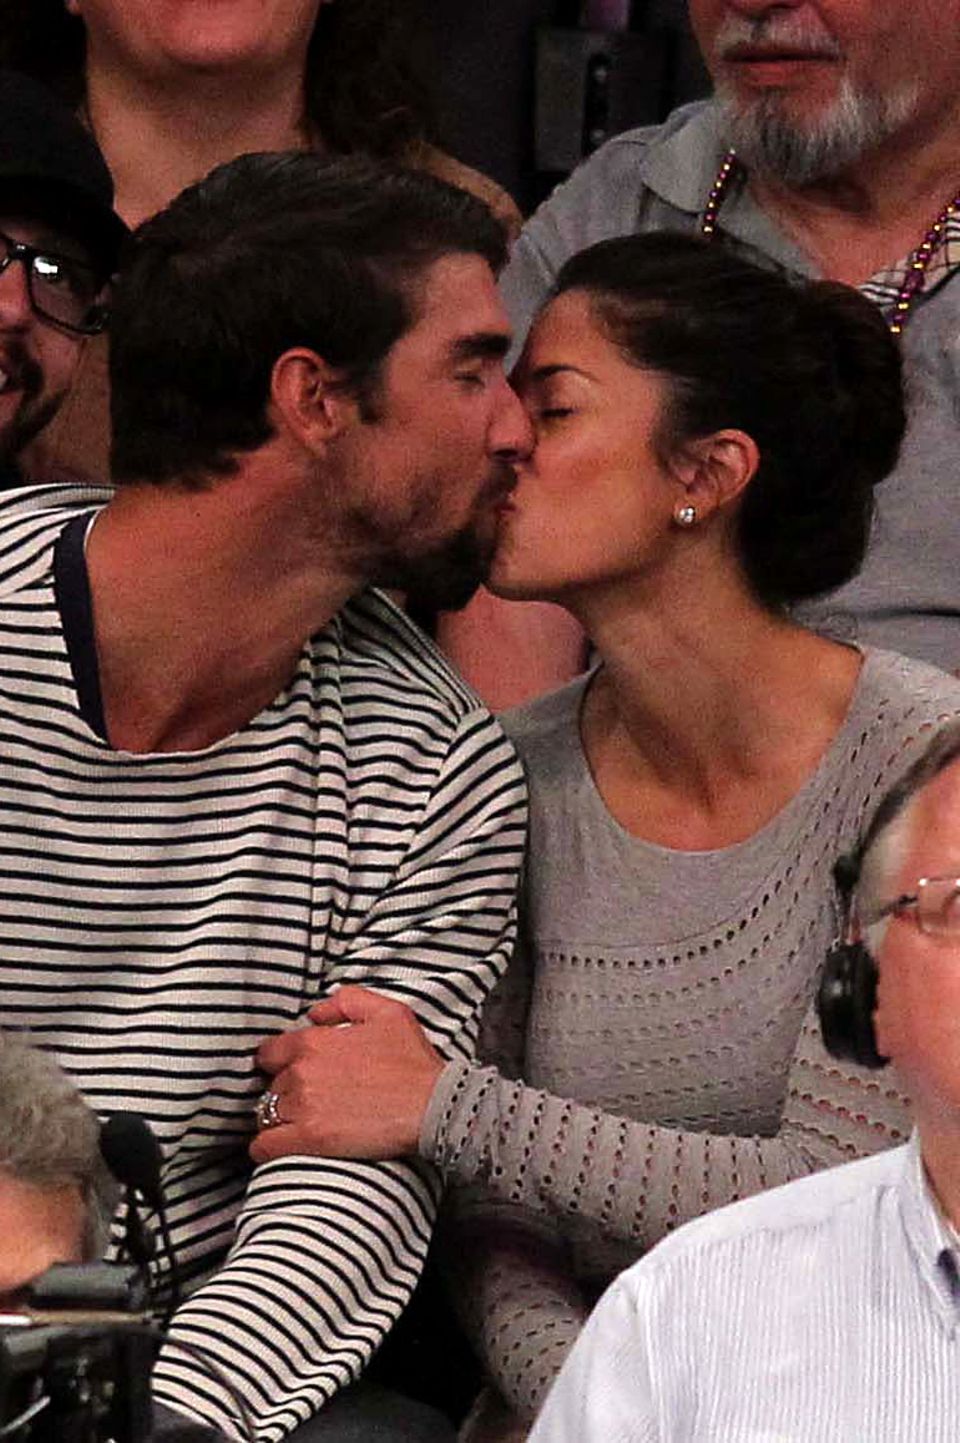 Die "Kiss Cam" hat diesmal Schwimmweltmeister Michael Phelps und seine Frau Nicole Johnson erwischt, die es bereitwillig mitmachen und küssen. Das Paar sitzt im Publikum beim Basketballspiel der Lakers. 